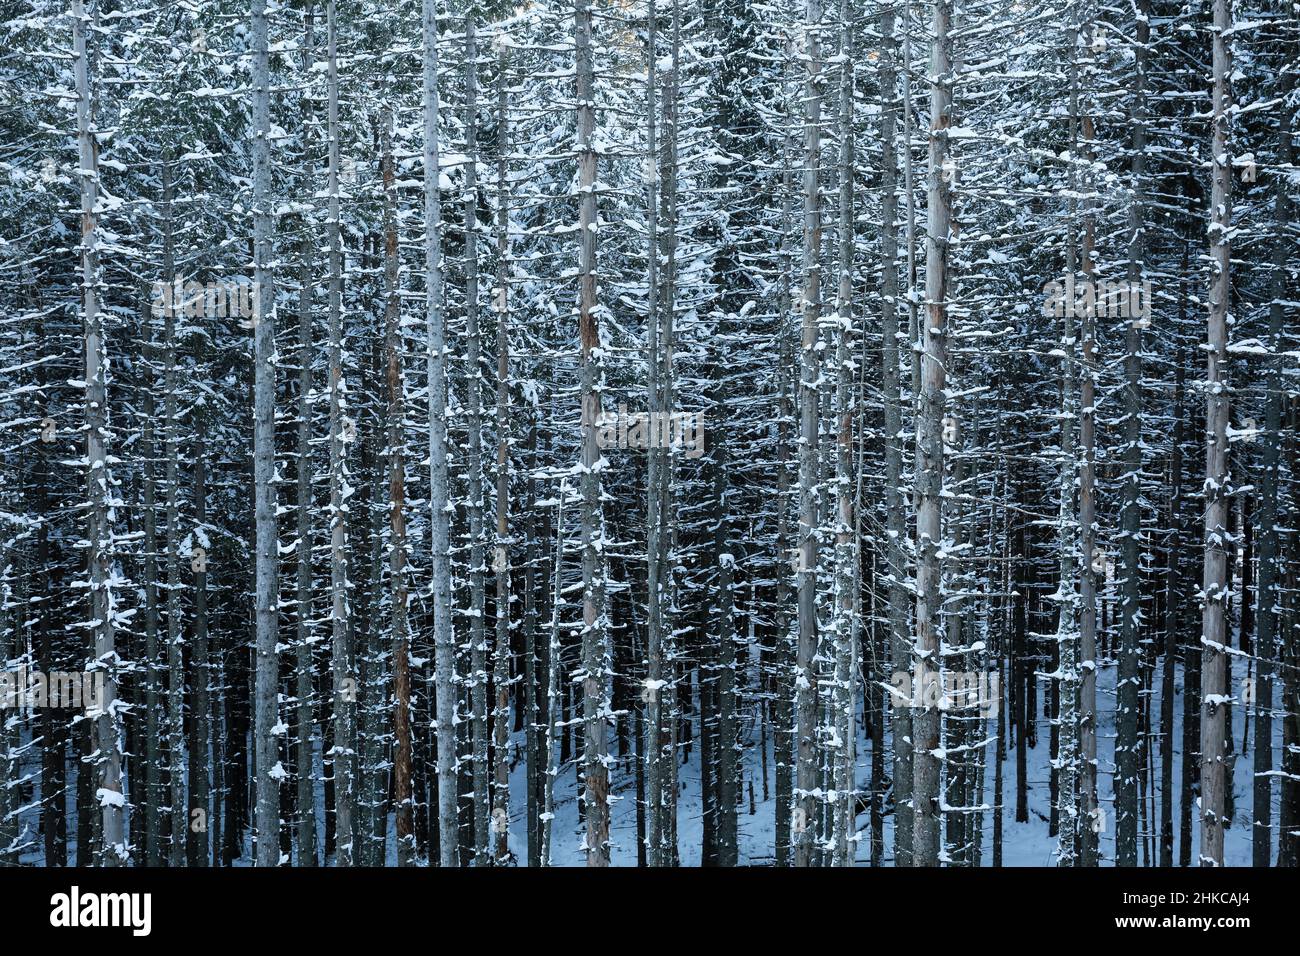 Zakopane, Polonia. 24 de enero de 2022. Un denso bosque de abetos altos, rectos y nevados. Crédito: Waldemar Sikora Foto de stock